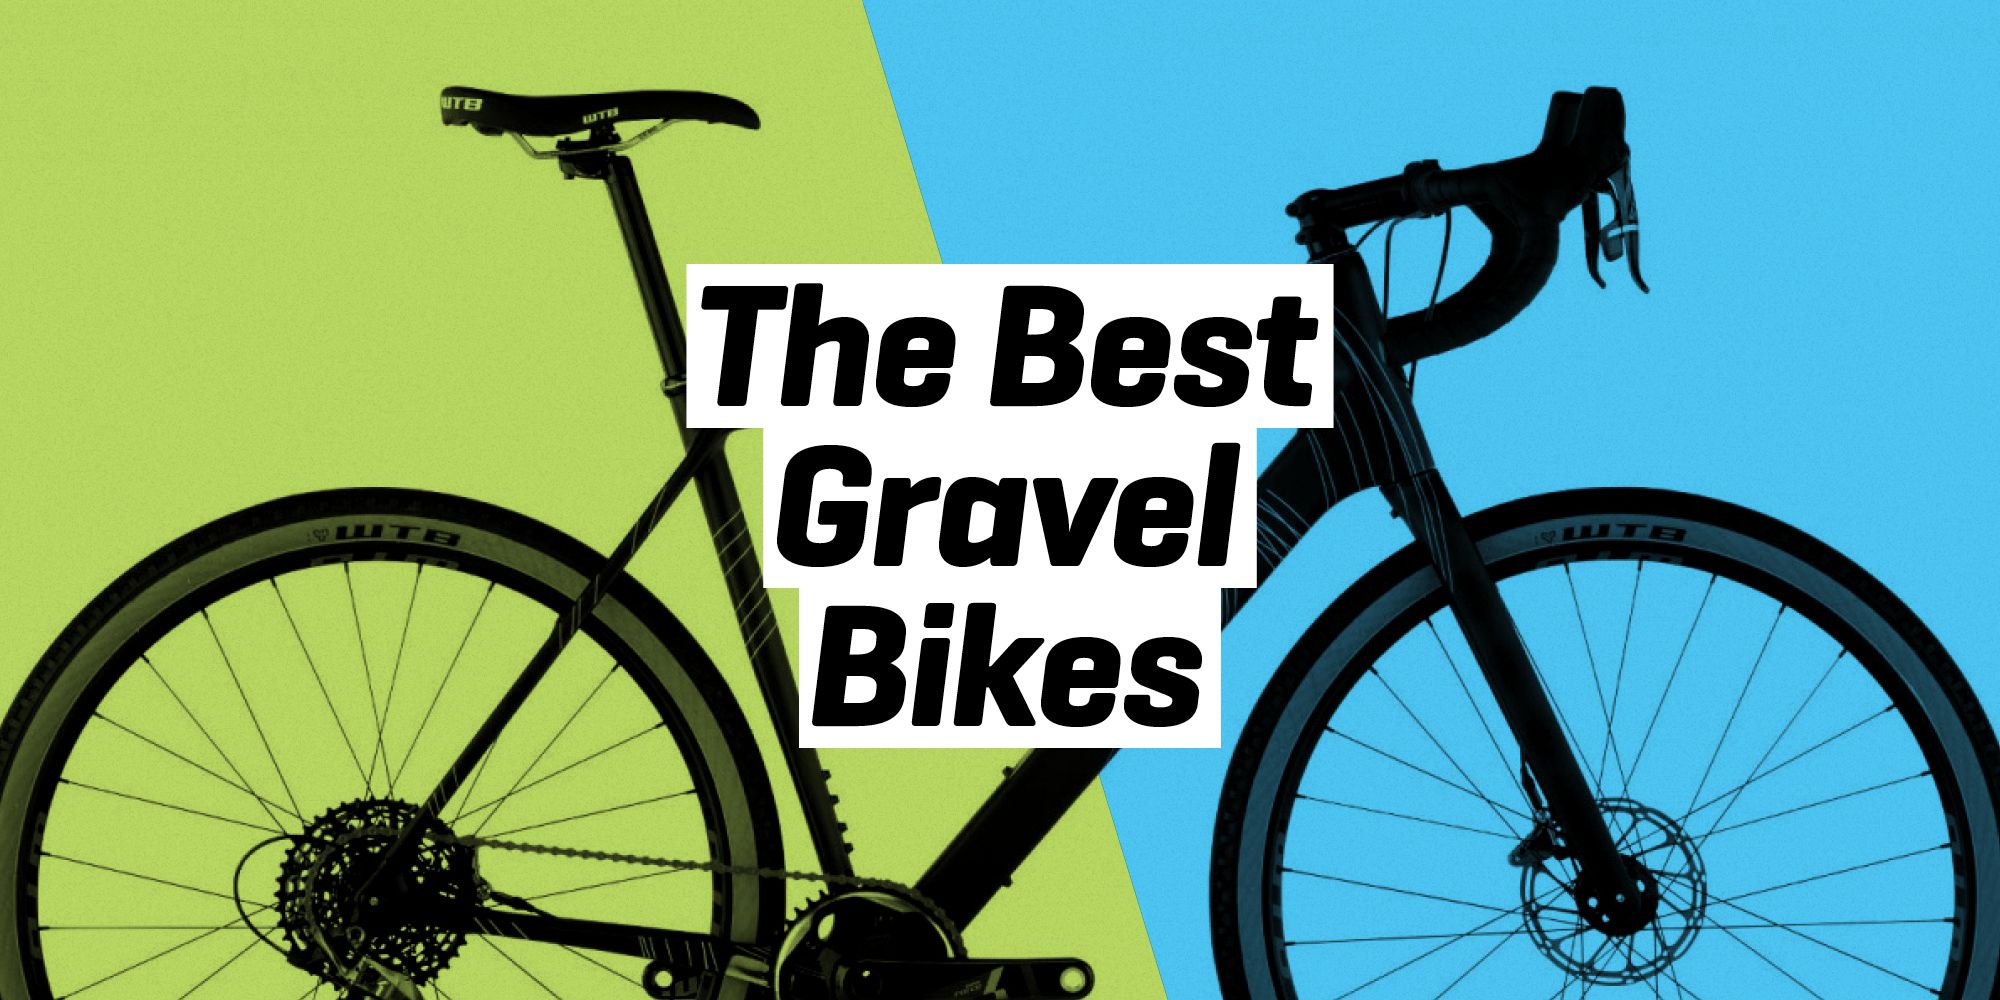 gravel bikes for touring